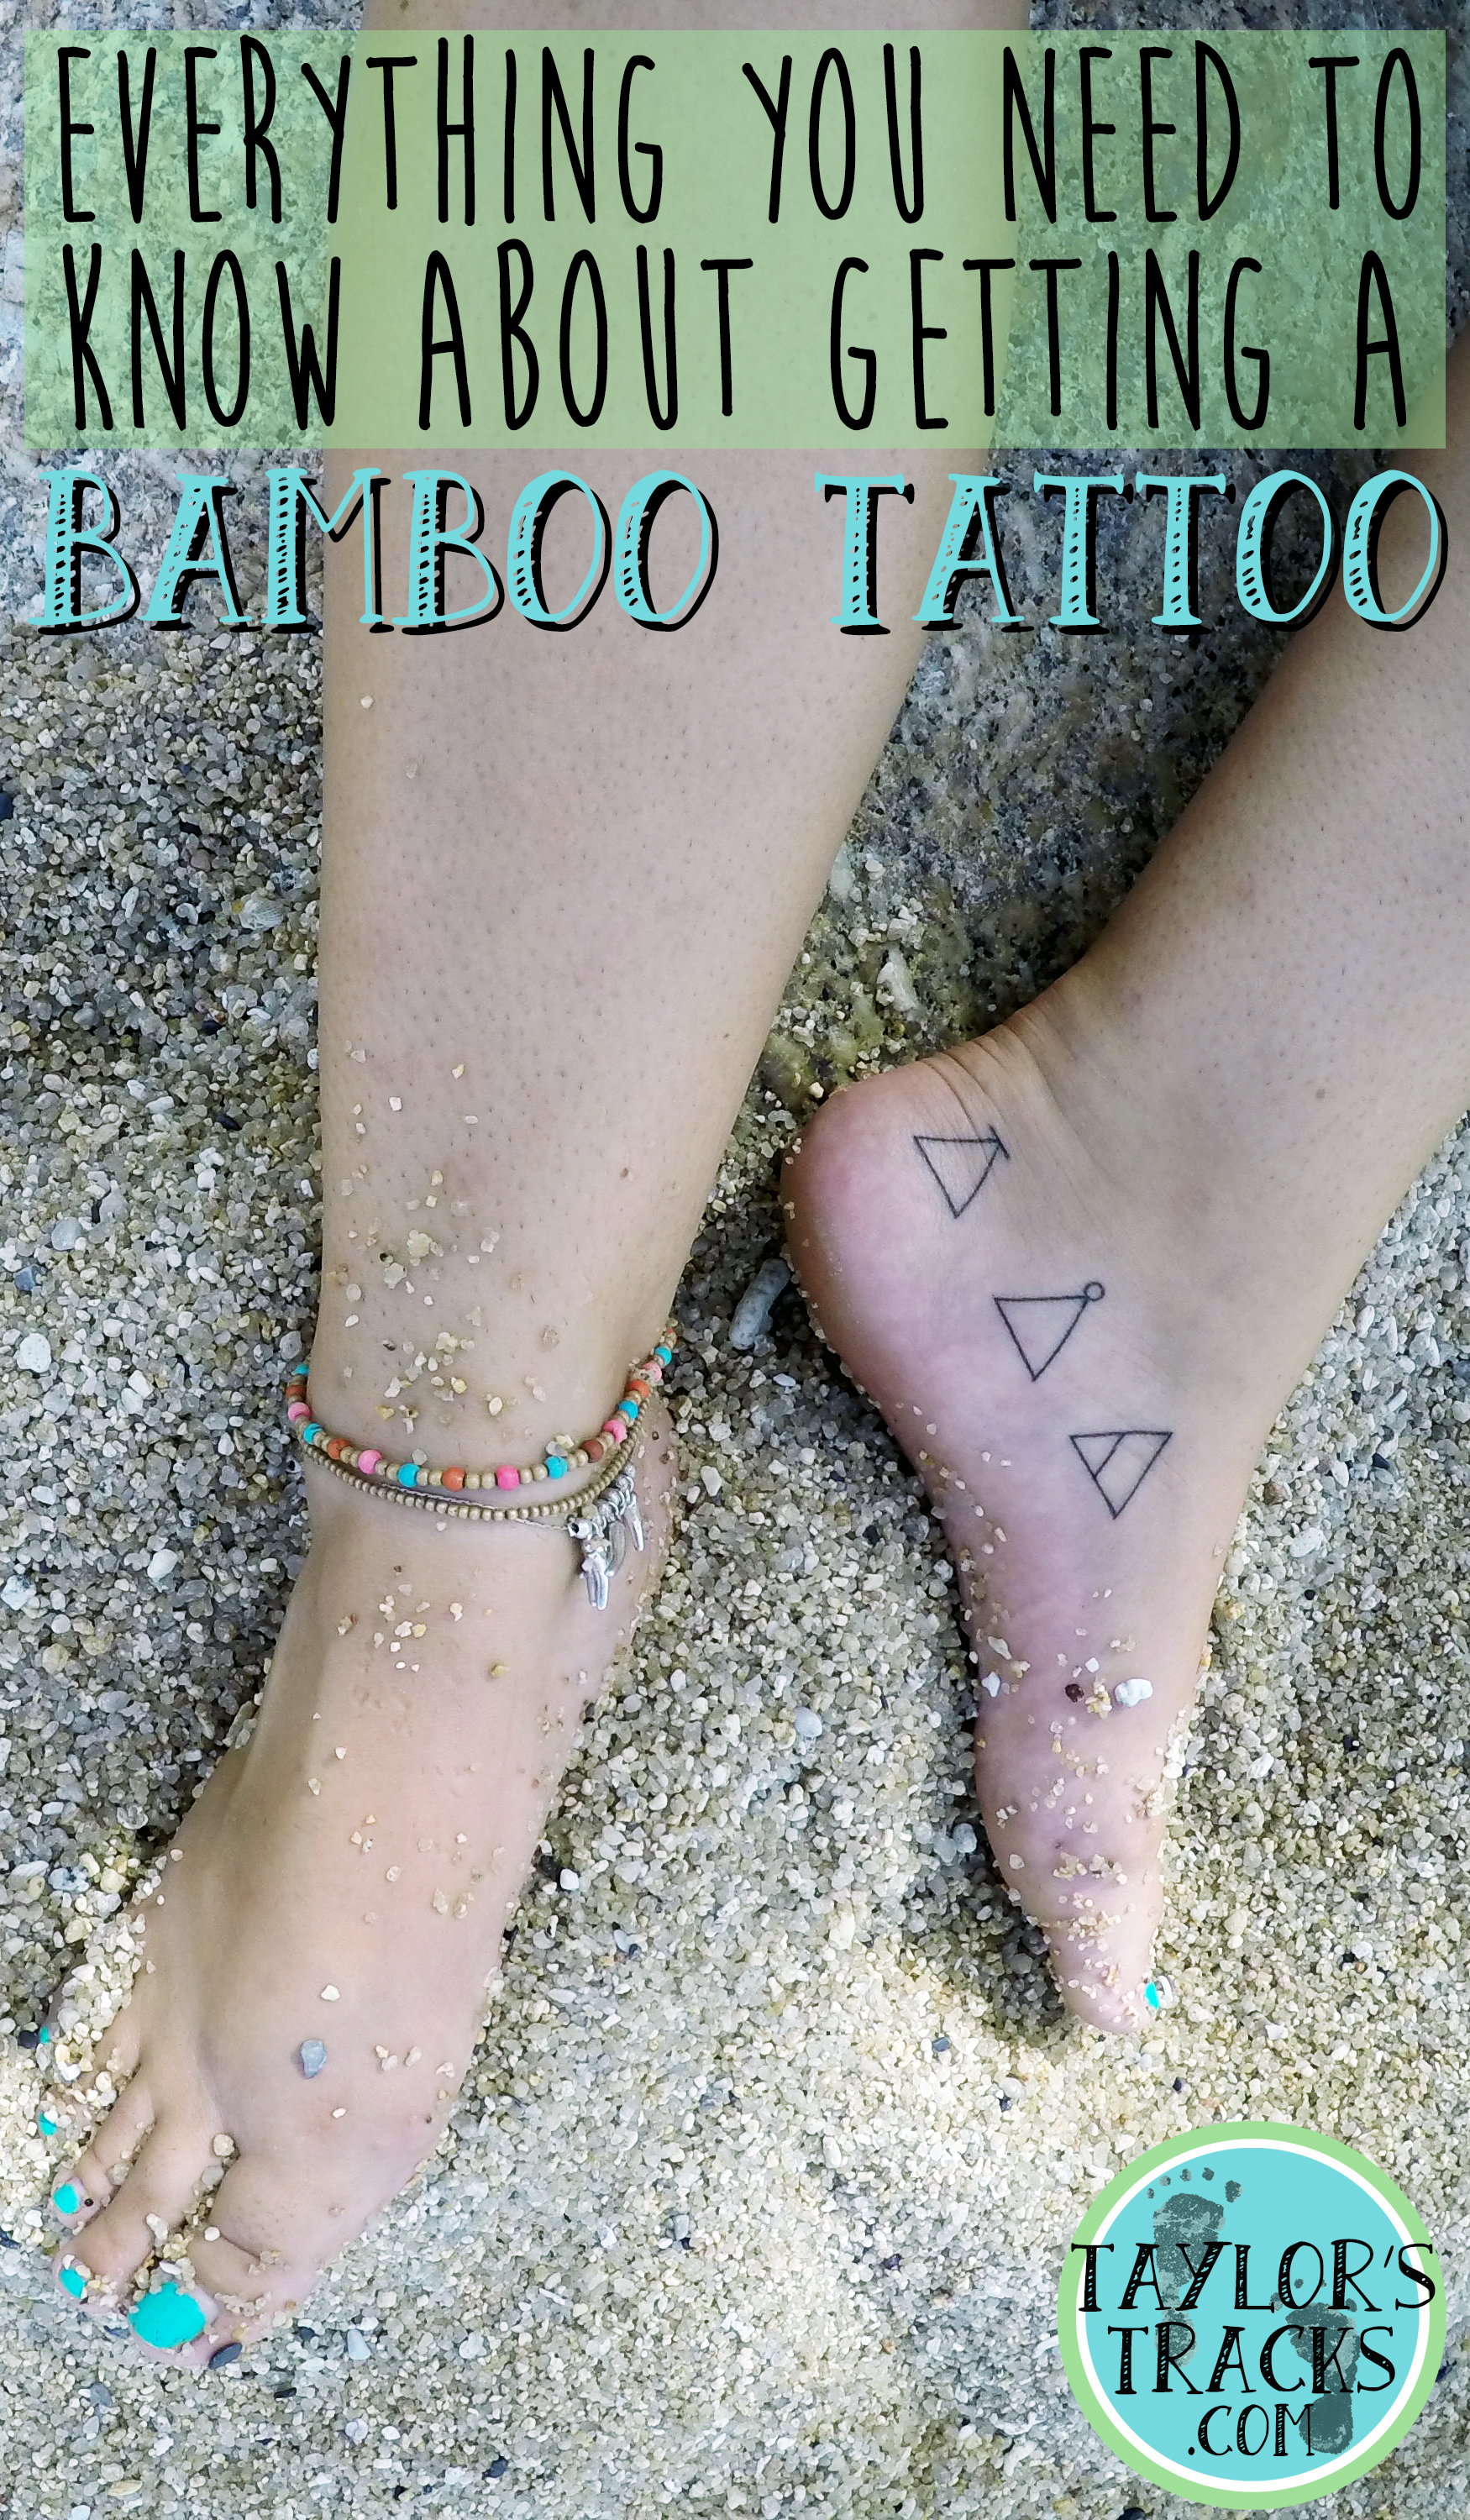 Getting a Bamboo Tattoo www.taylorstracks.com